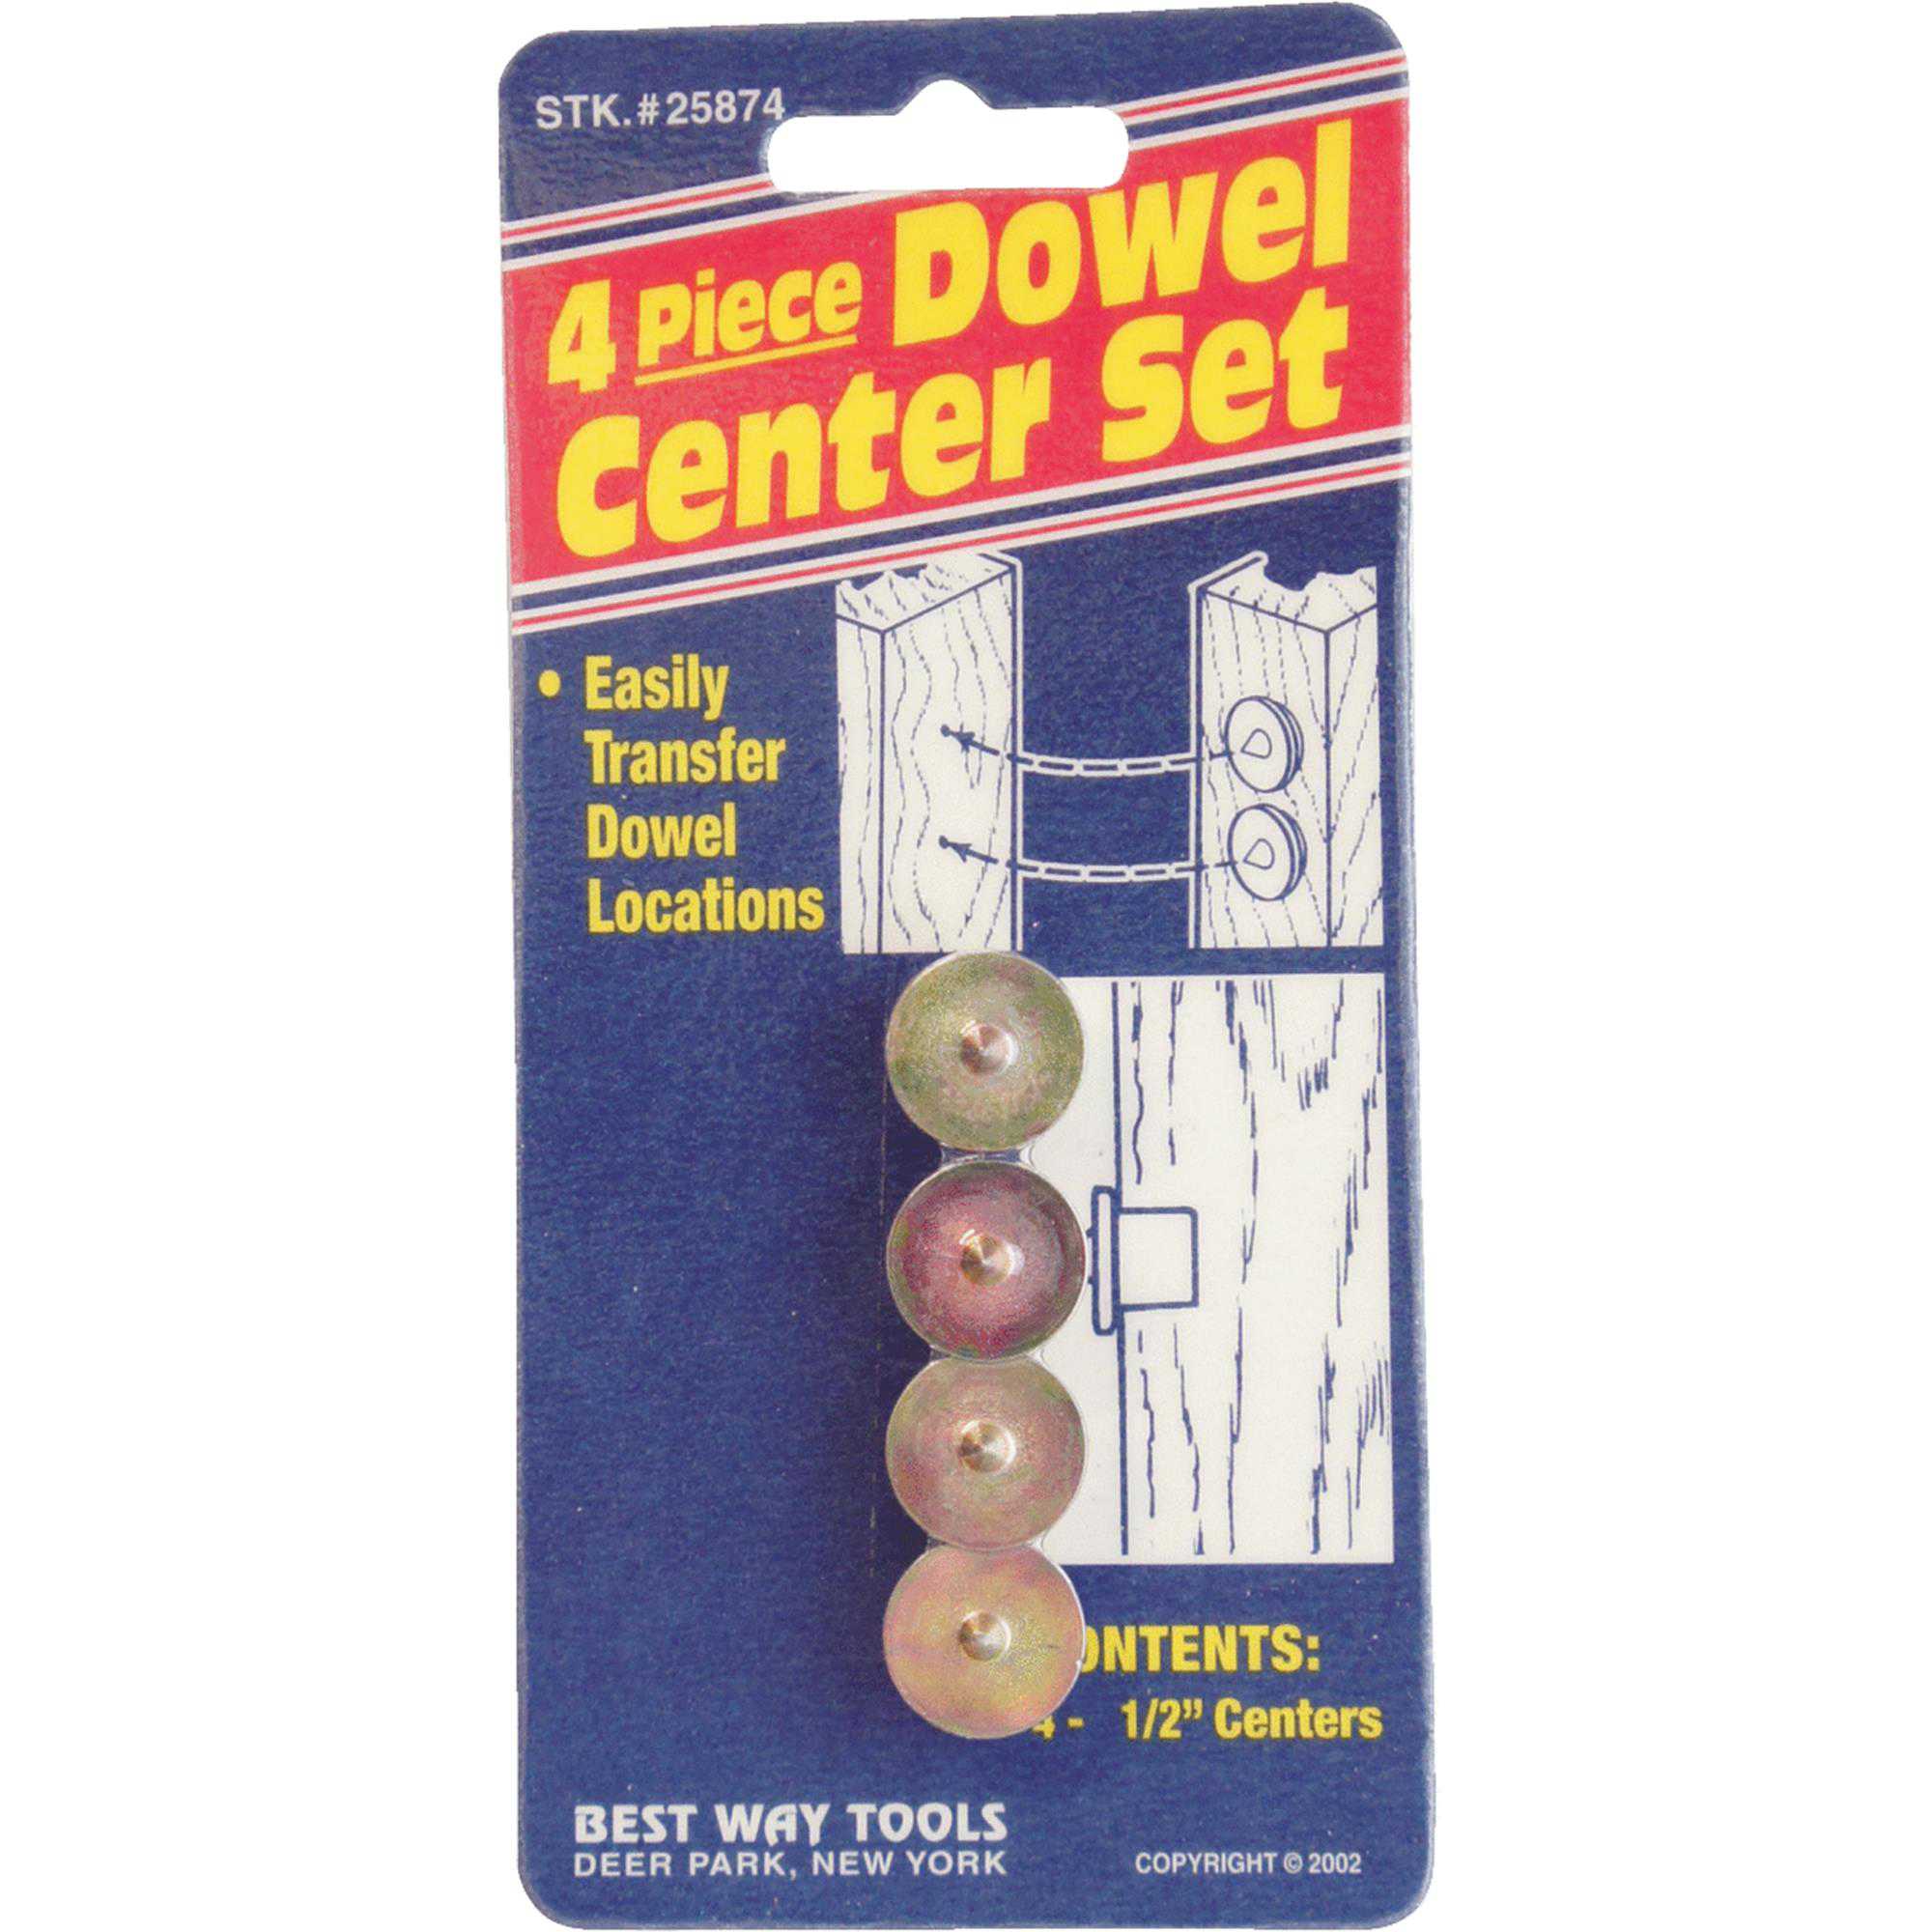 Dowel Center